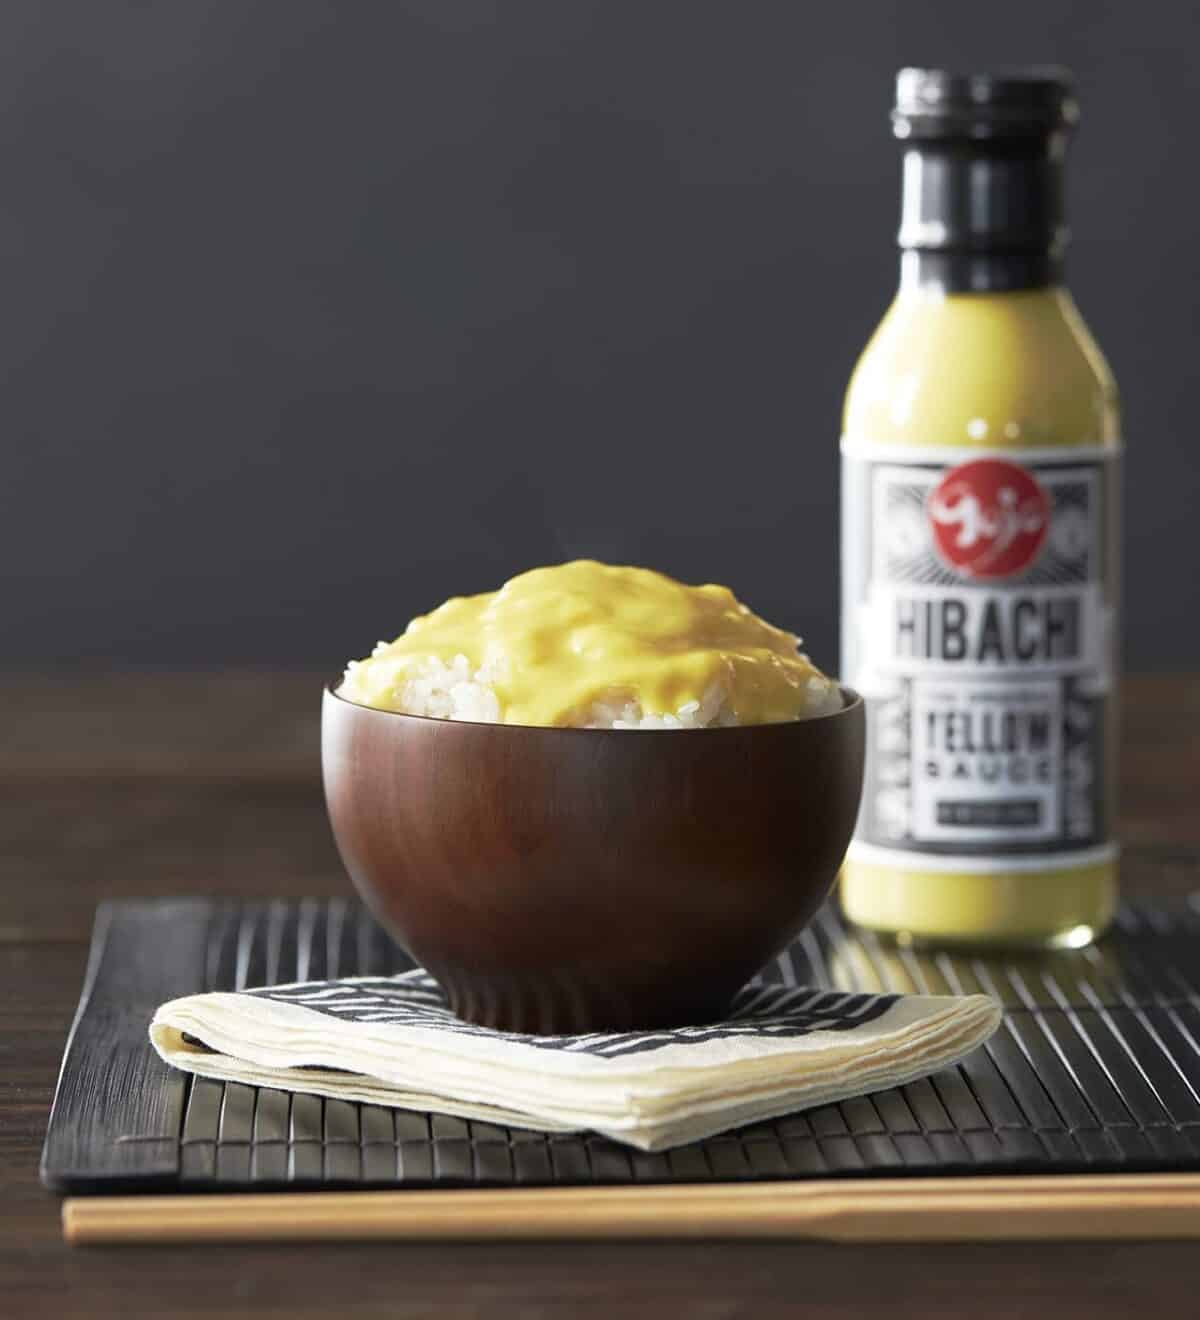 Hibachi yellow sauce Gojo 3 pack